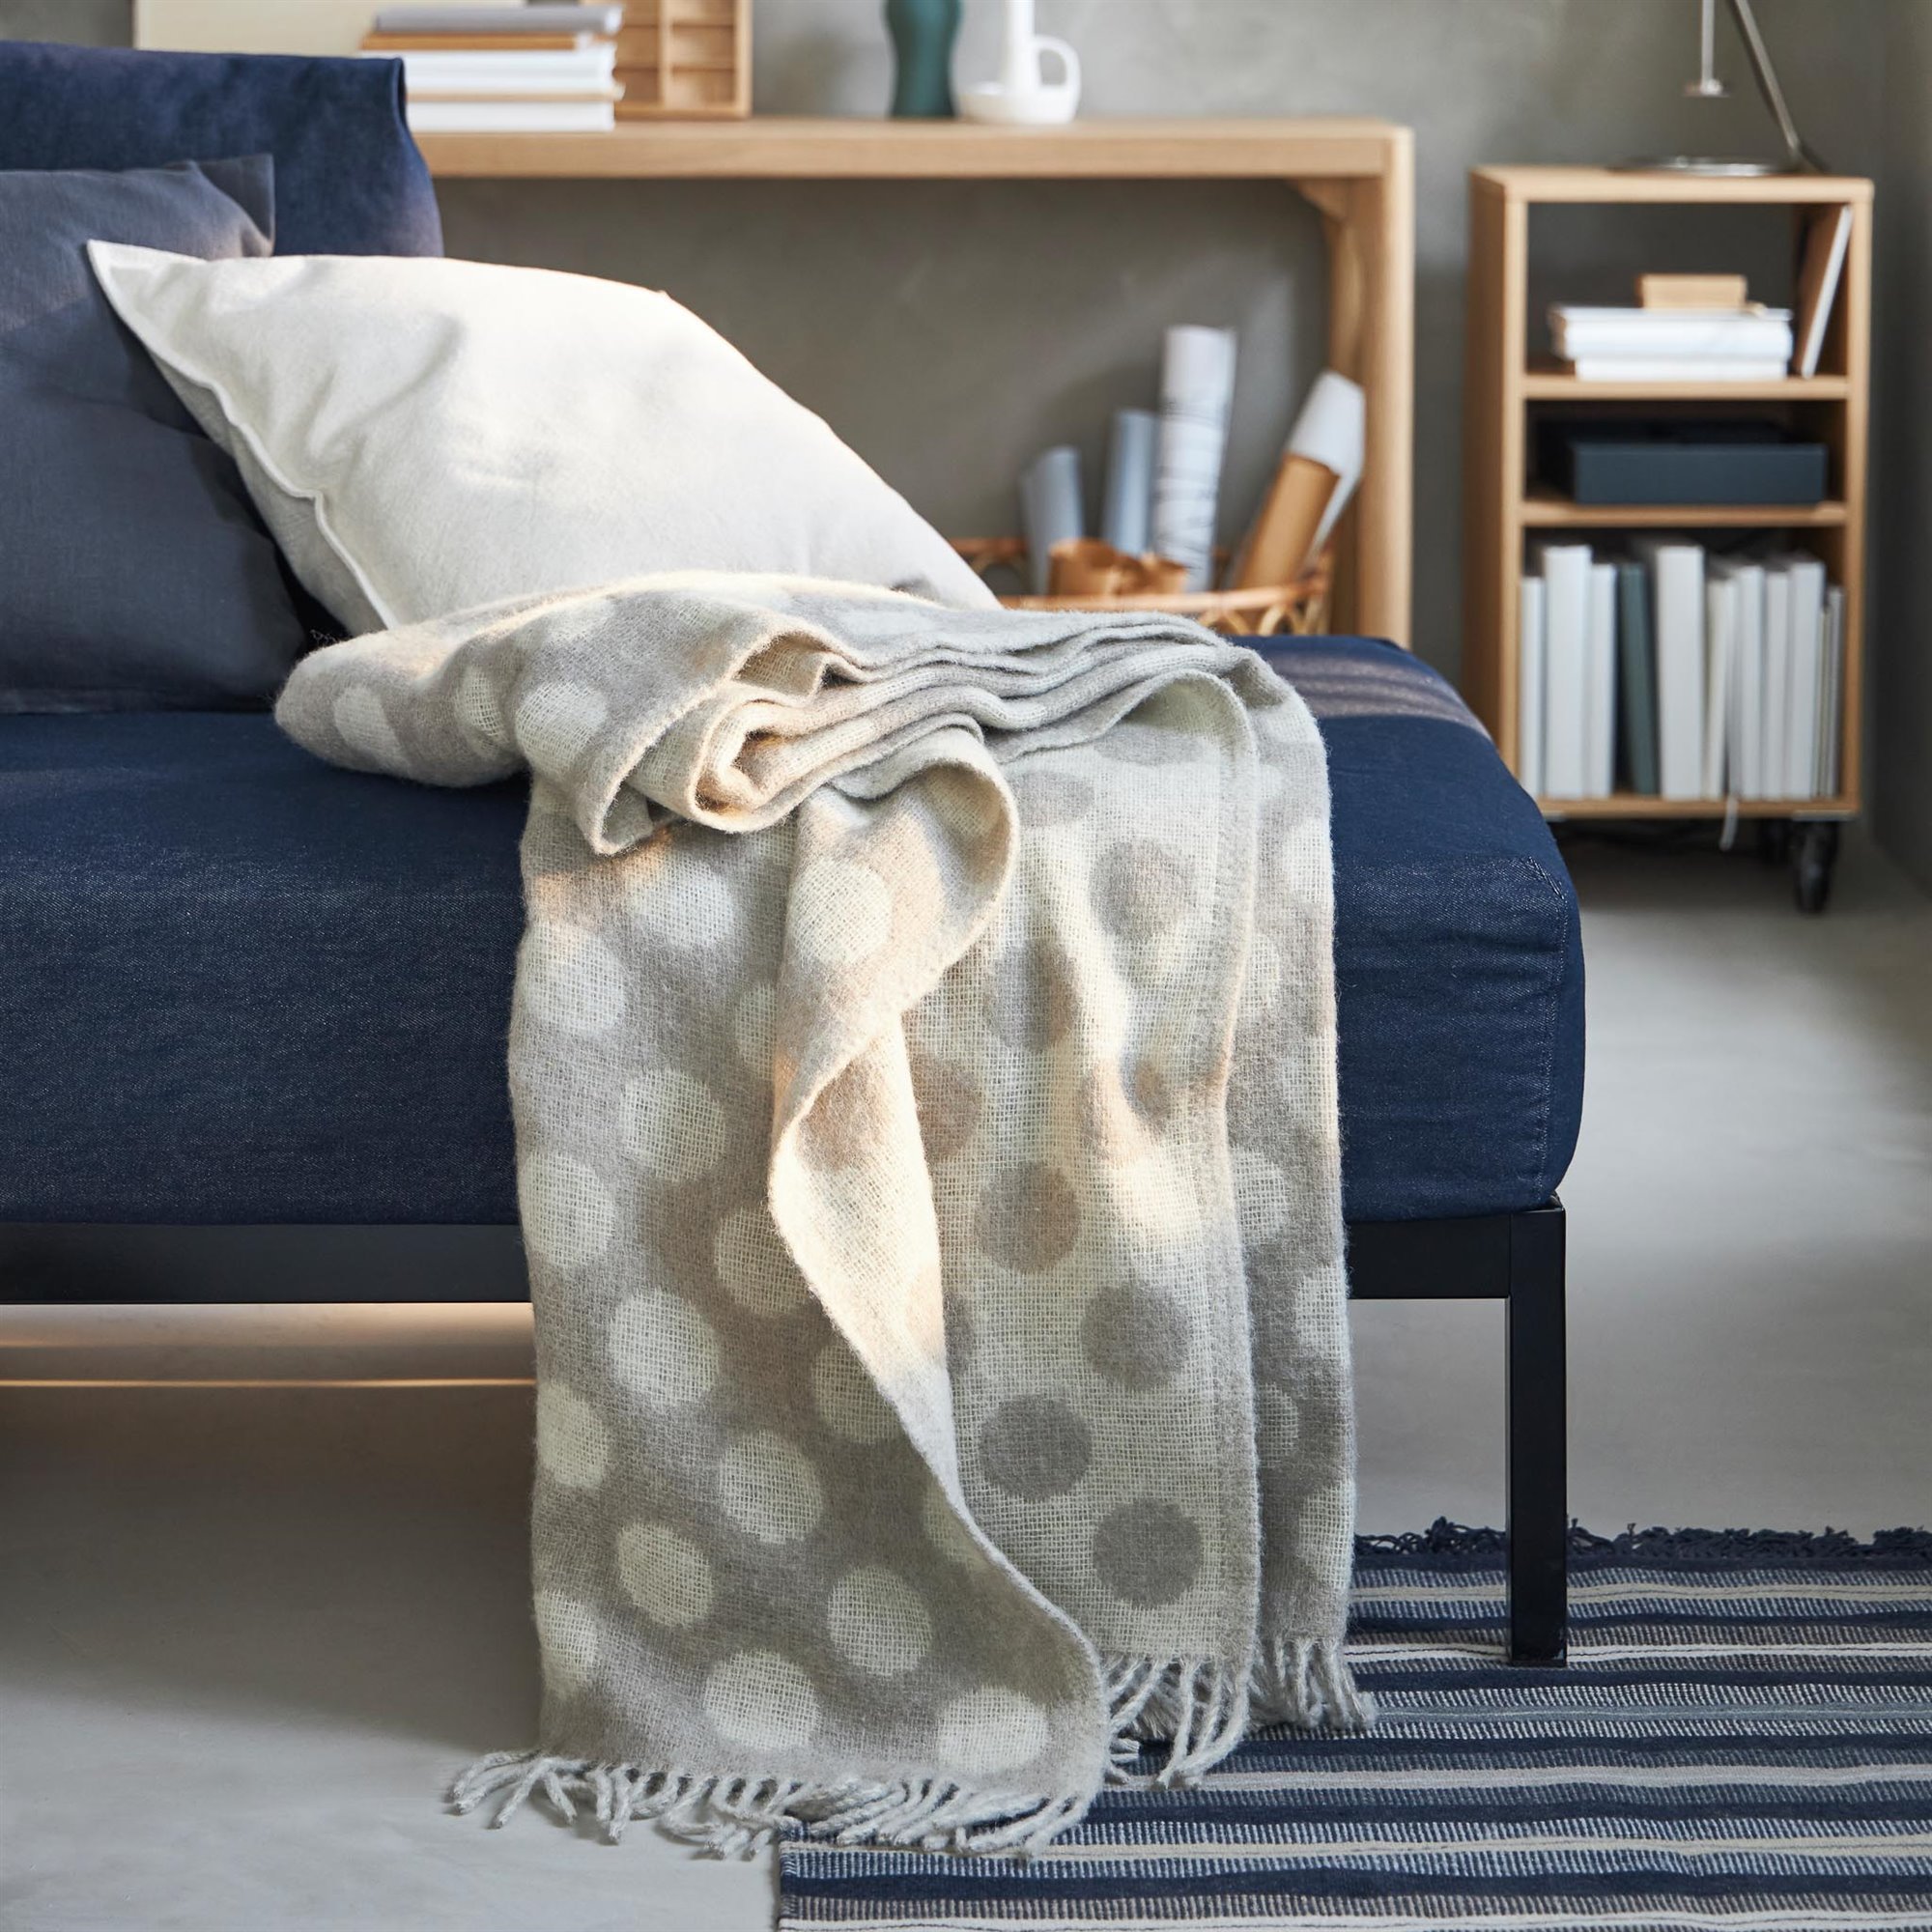 IKEA Hogar sostenible sofa y manta. Aislamiento a través de textiles 